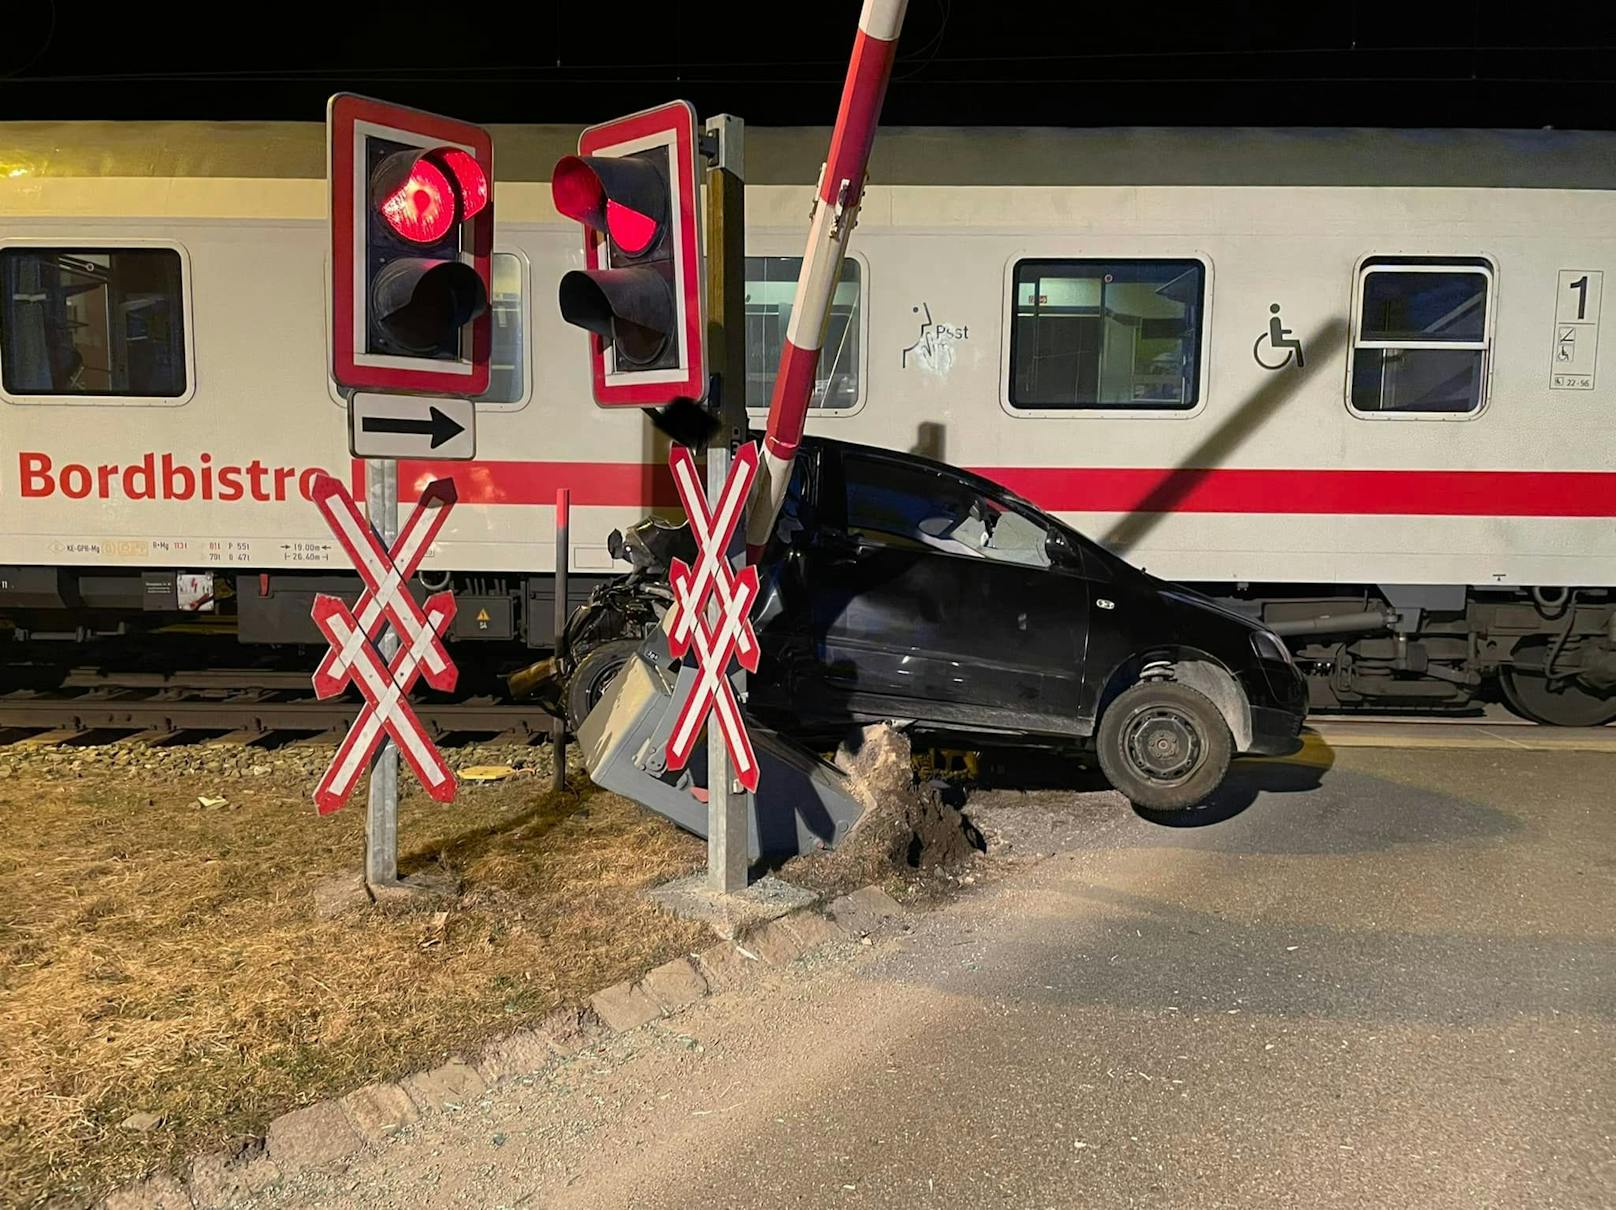 Schranken und Rotlicht ignoriert – Auto von Zug erfasst